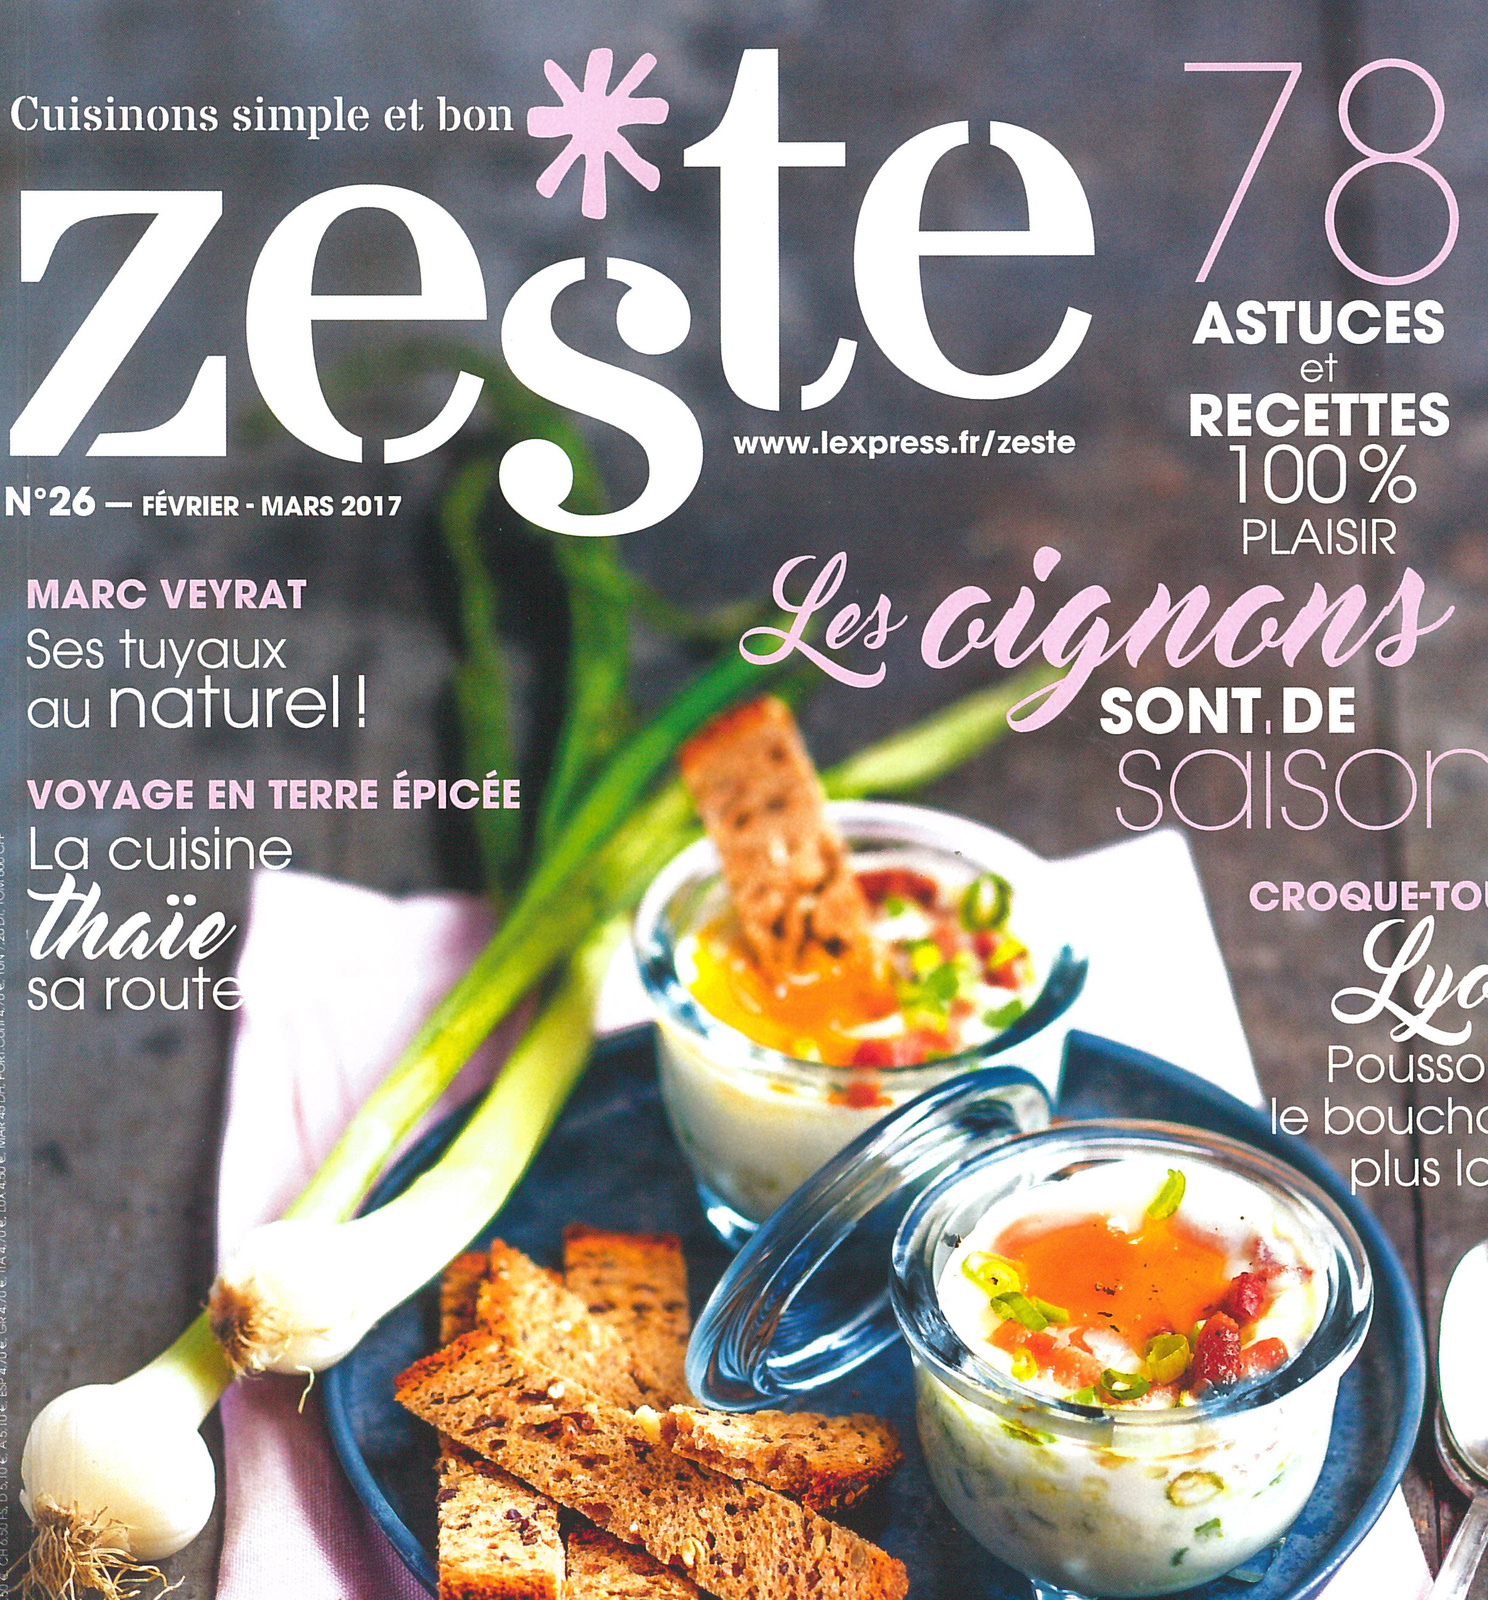 Les Oeufs au coeur des recettes d'entremets du magazine Zeste !